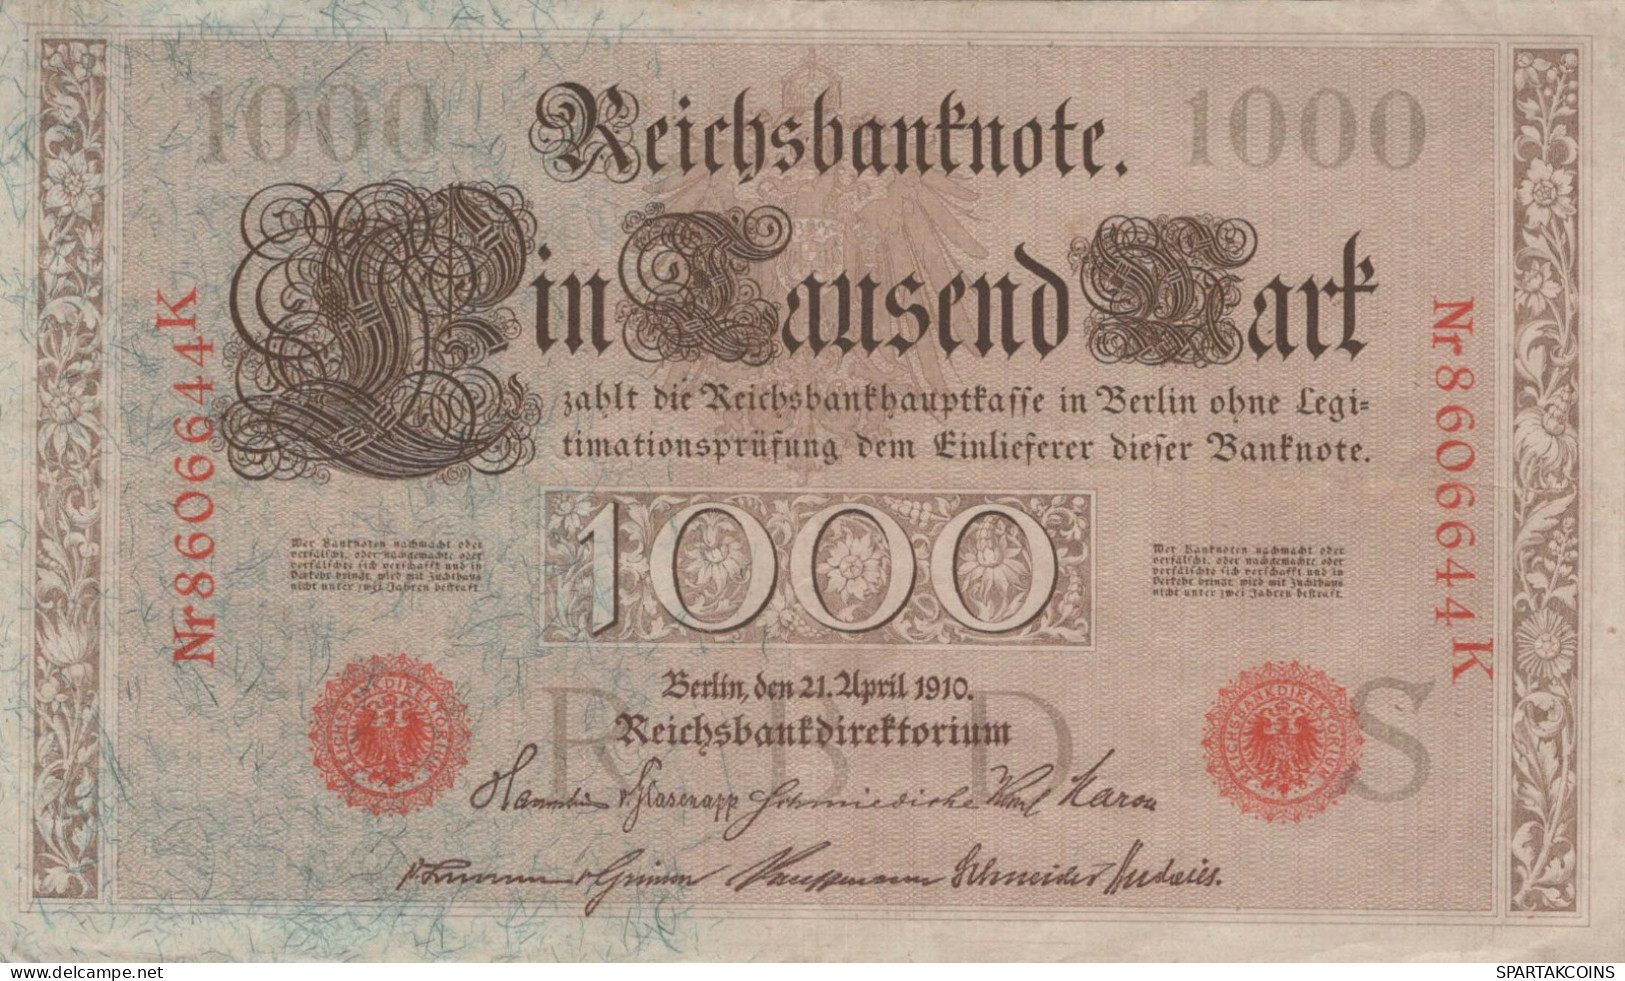 1000 MARK 1910 DEUTSCHLAND Papiergeld Banknote #PL293 - [11] Local Banknote Issues